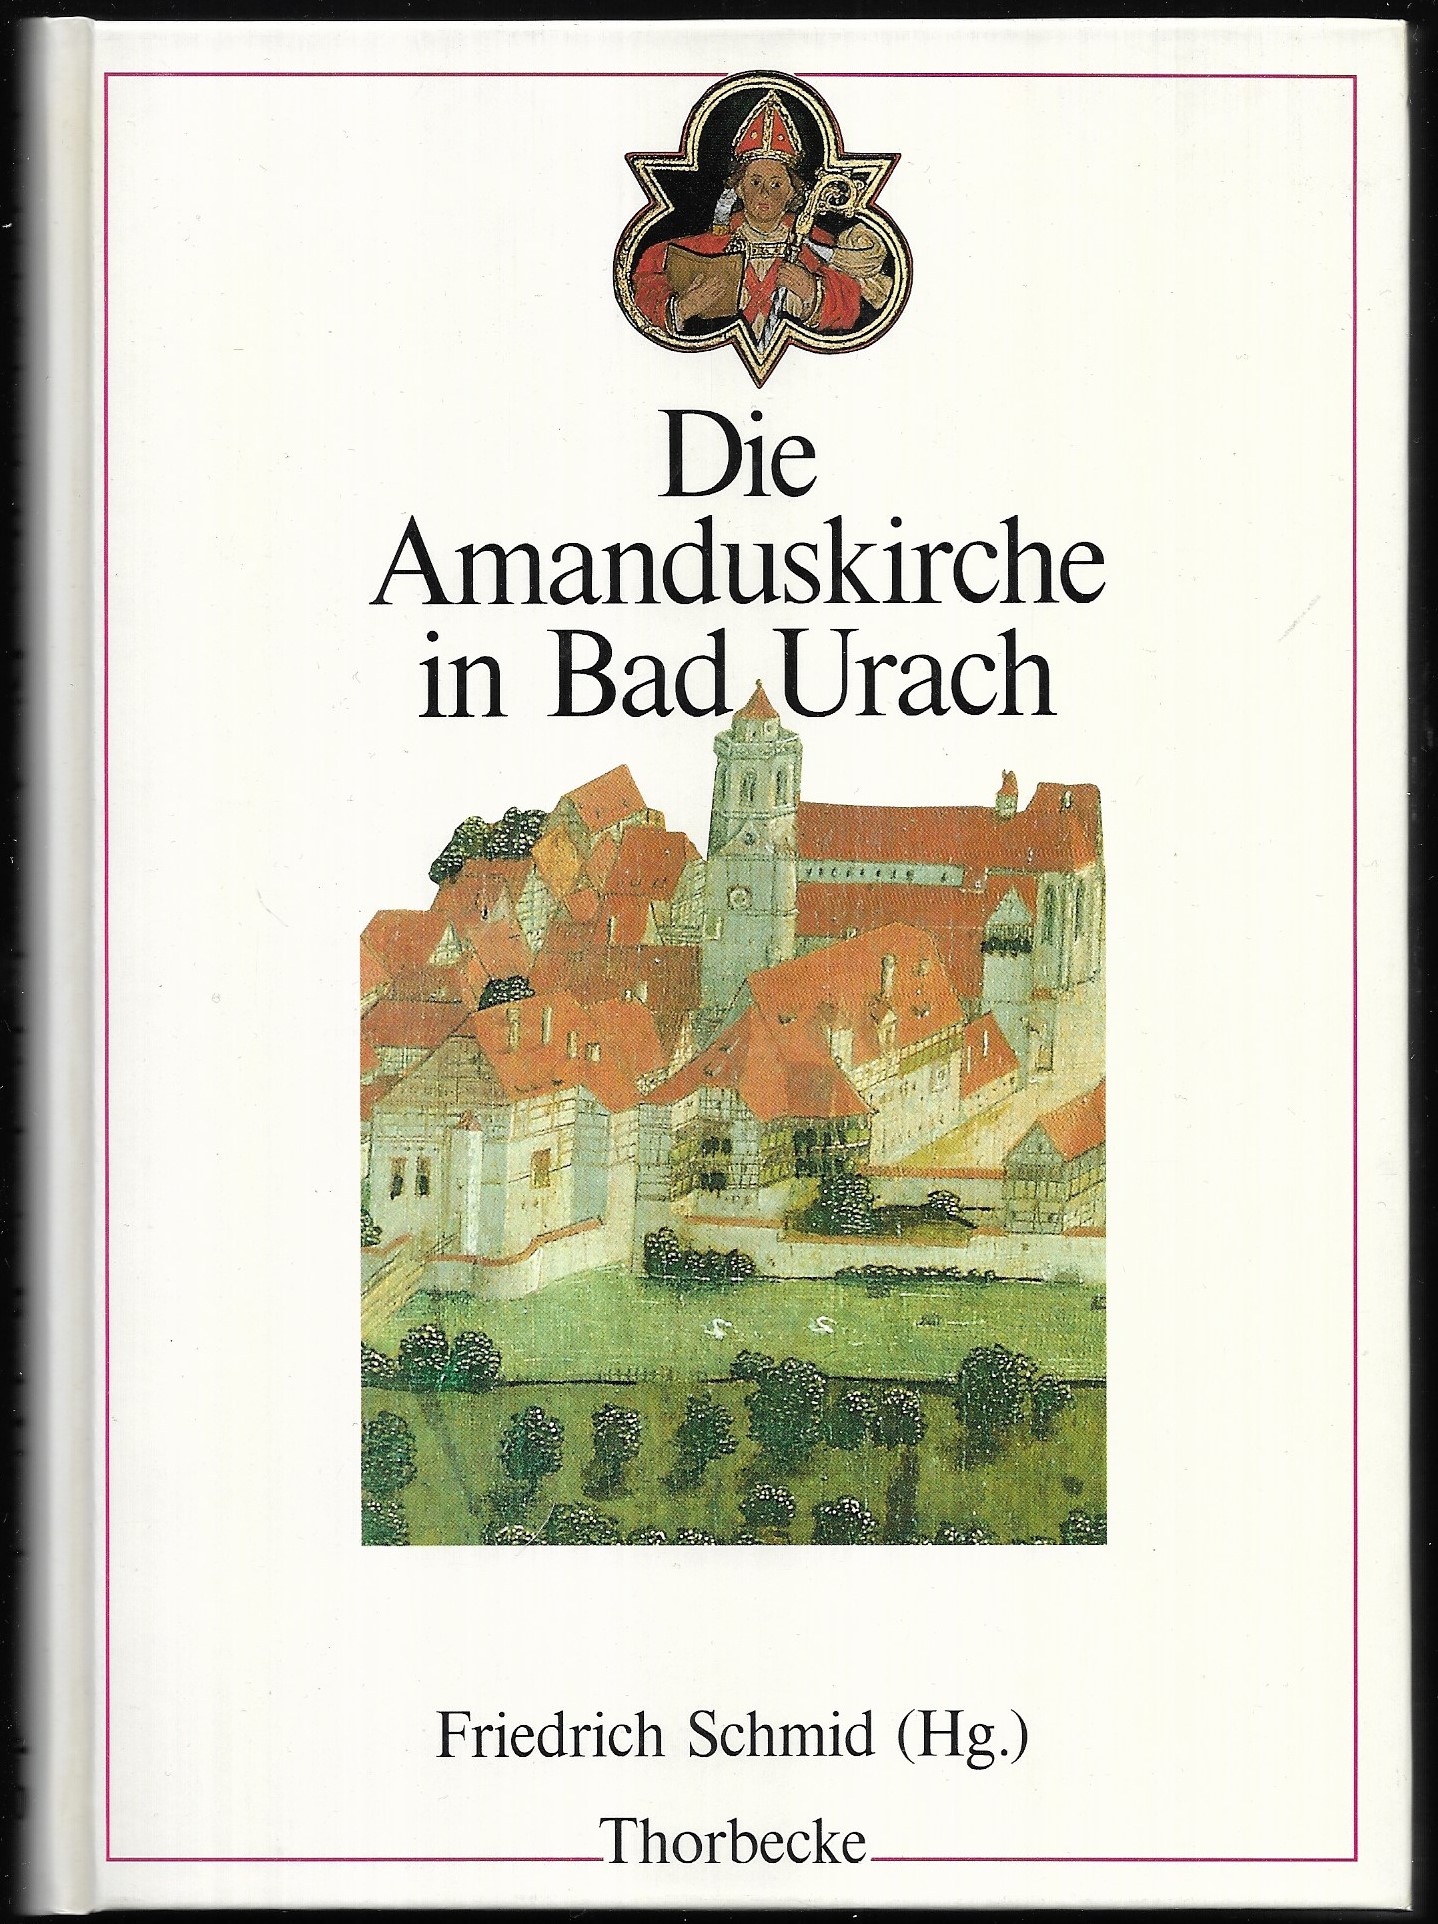 Die Amanduskirche in Bad Urach. Herausgegeben im Auftrag des Vereins zur Erhaltung der Amanduskirche e.V. - SCHMID, Friedrich (Hrsg.)